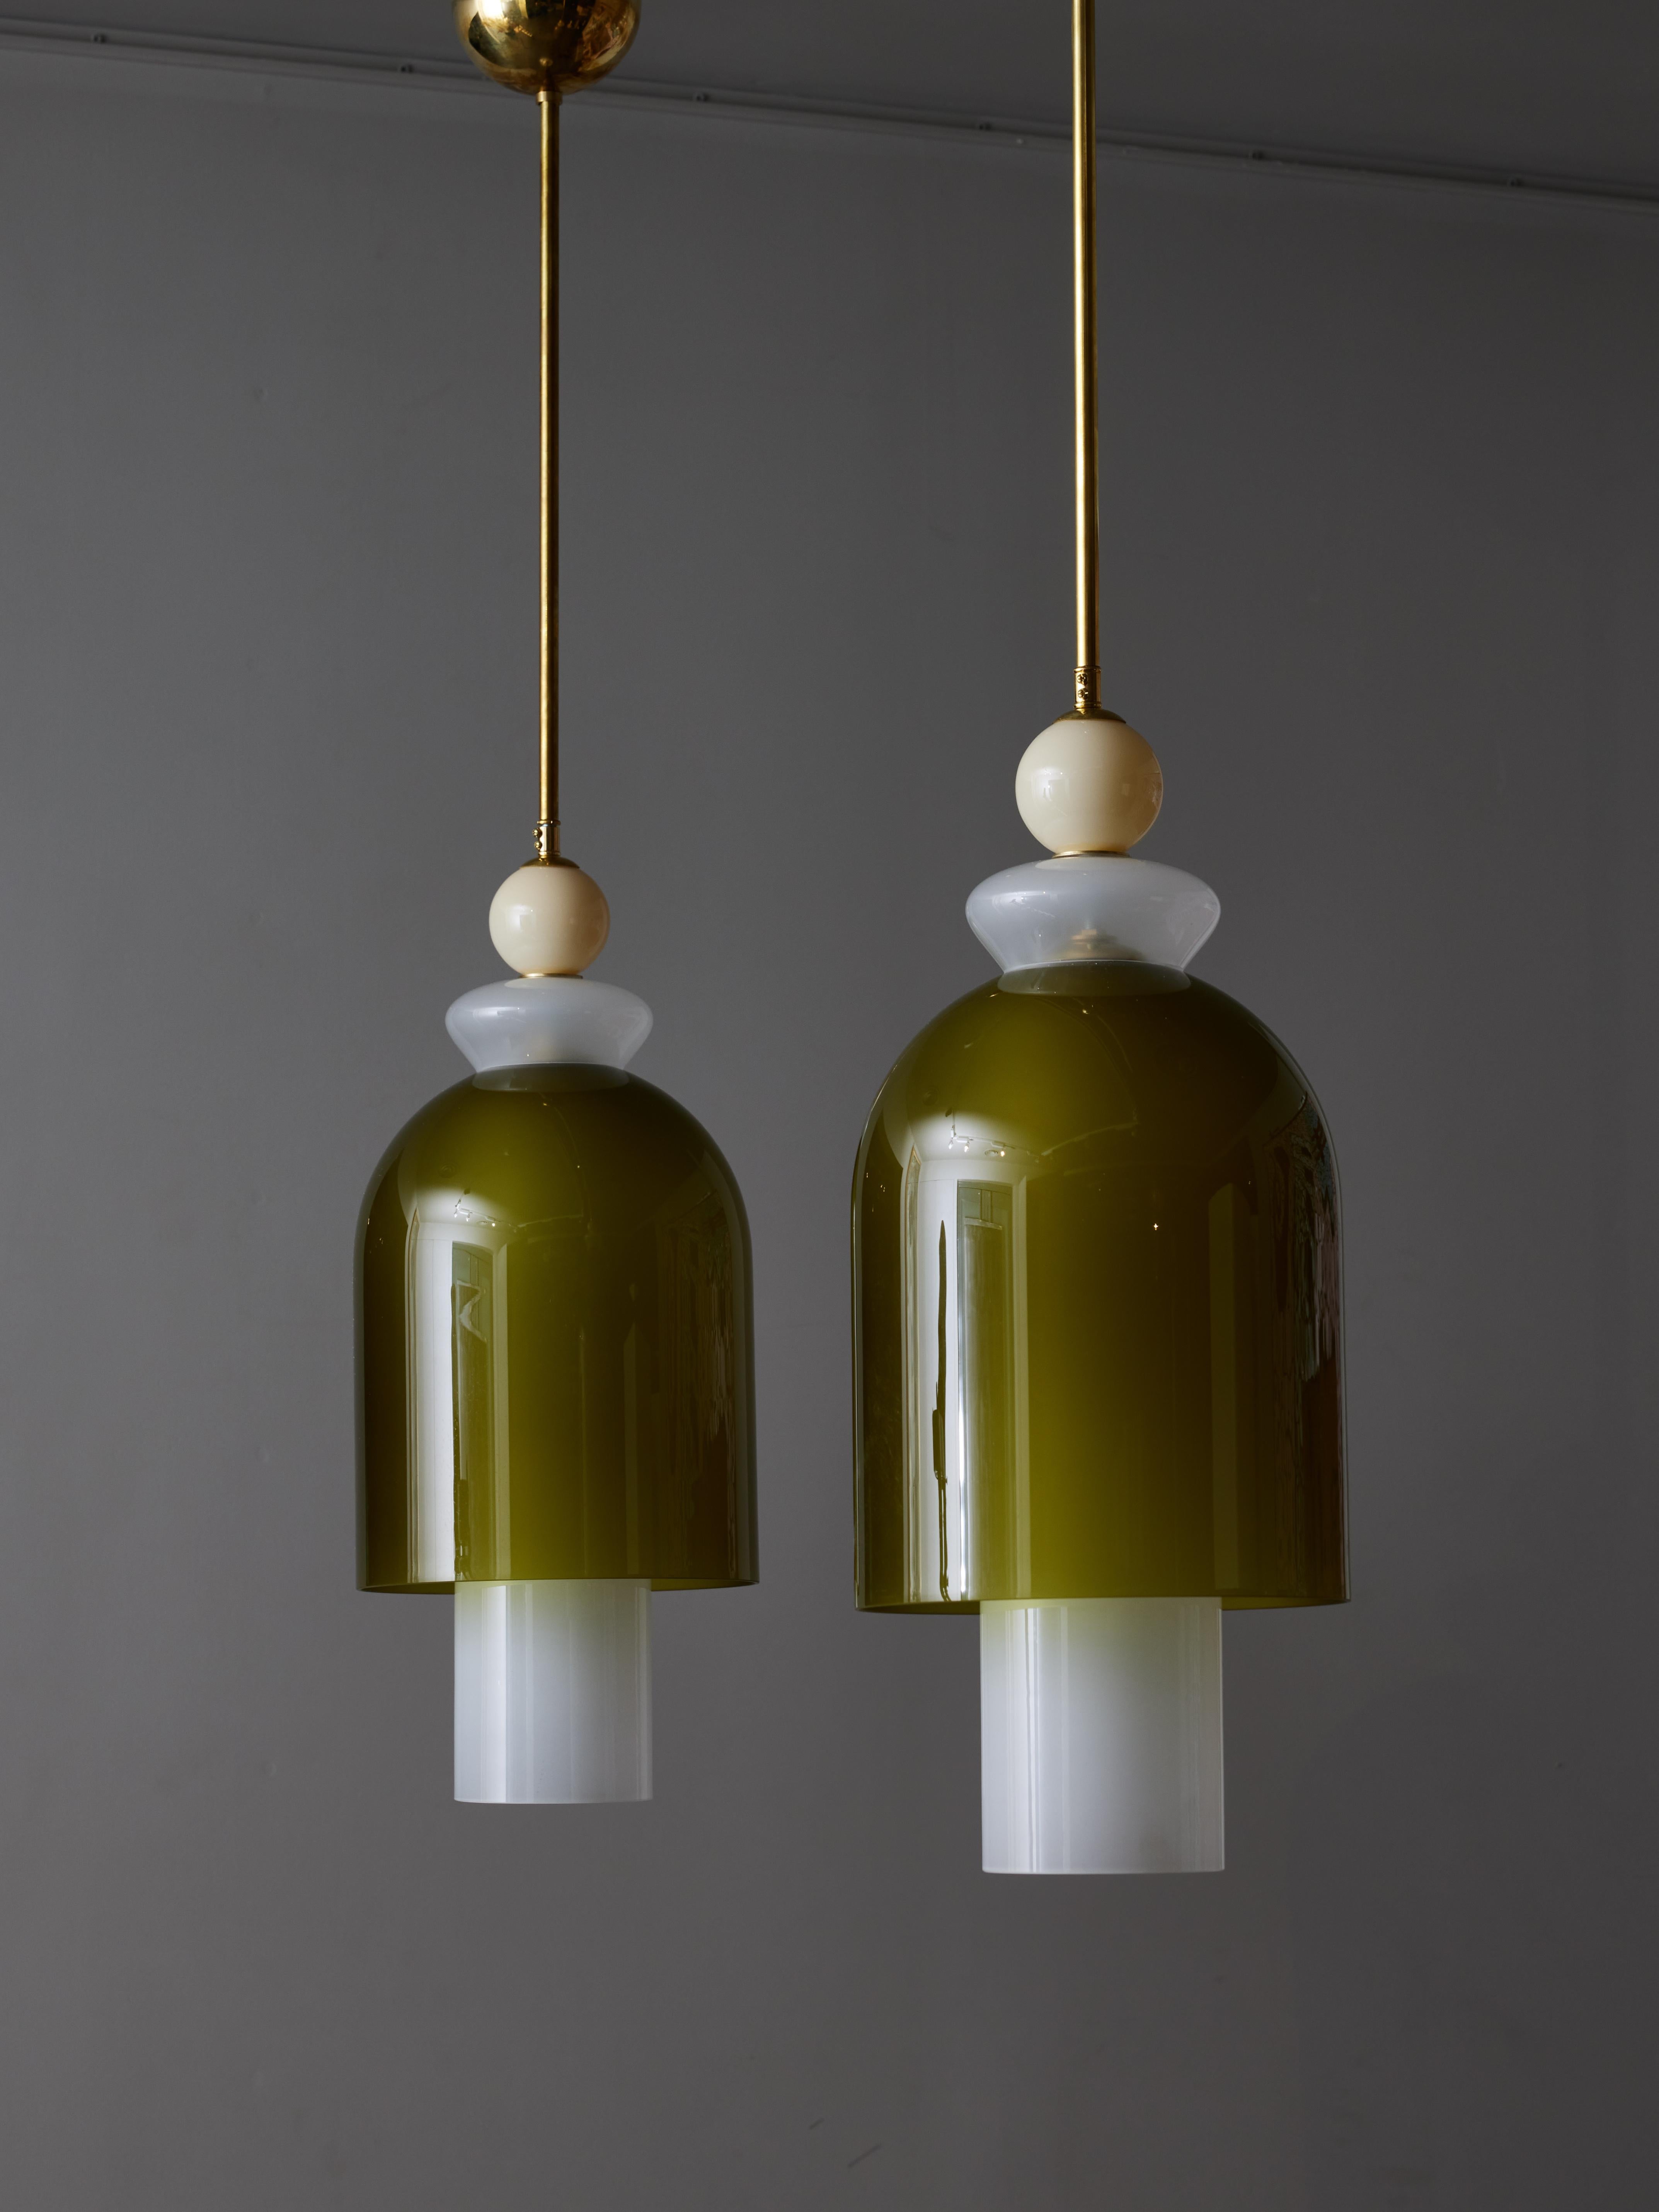 Paire de suspensions décoratives composées d'une tige en laiton et de tubes et décors en verre de Murano de différentes tailles en blanc, vert et beige très doux.